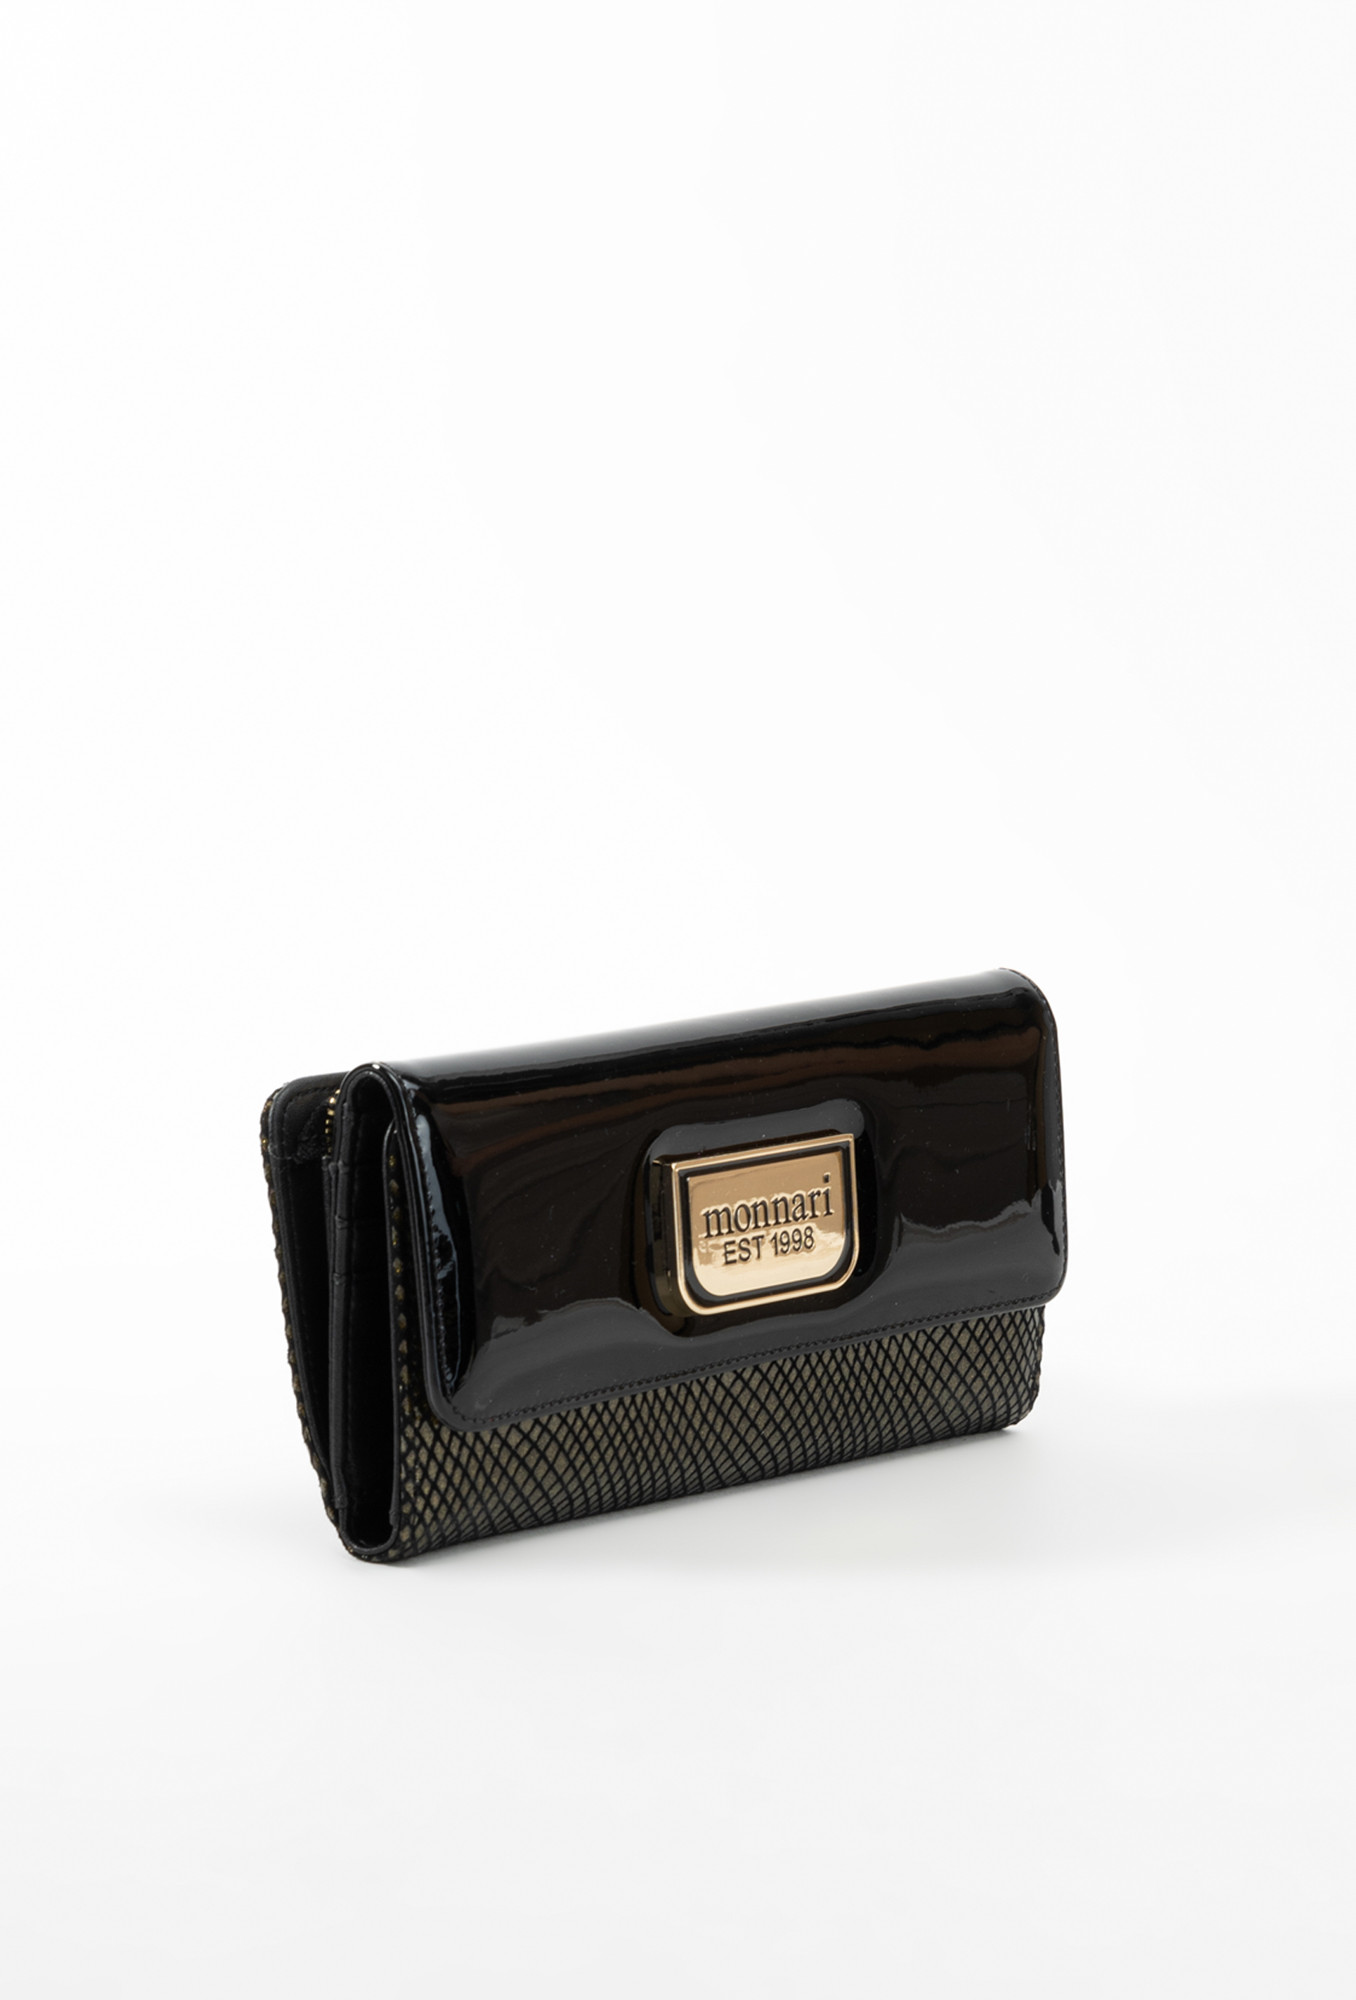 Monnari Peněženky Velká dámská peněženka s klopou Multi Black OS